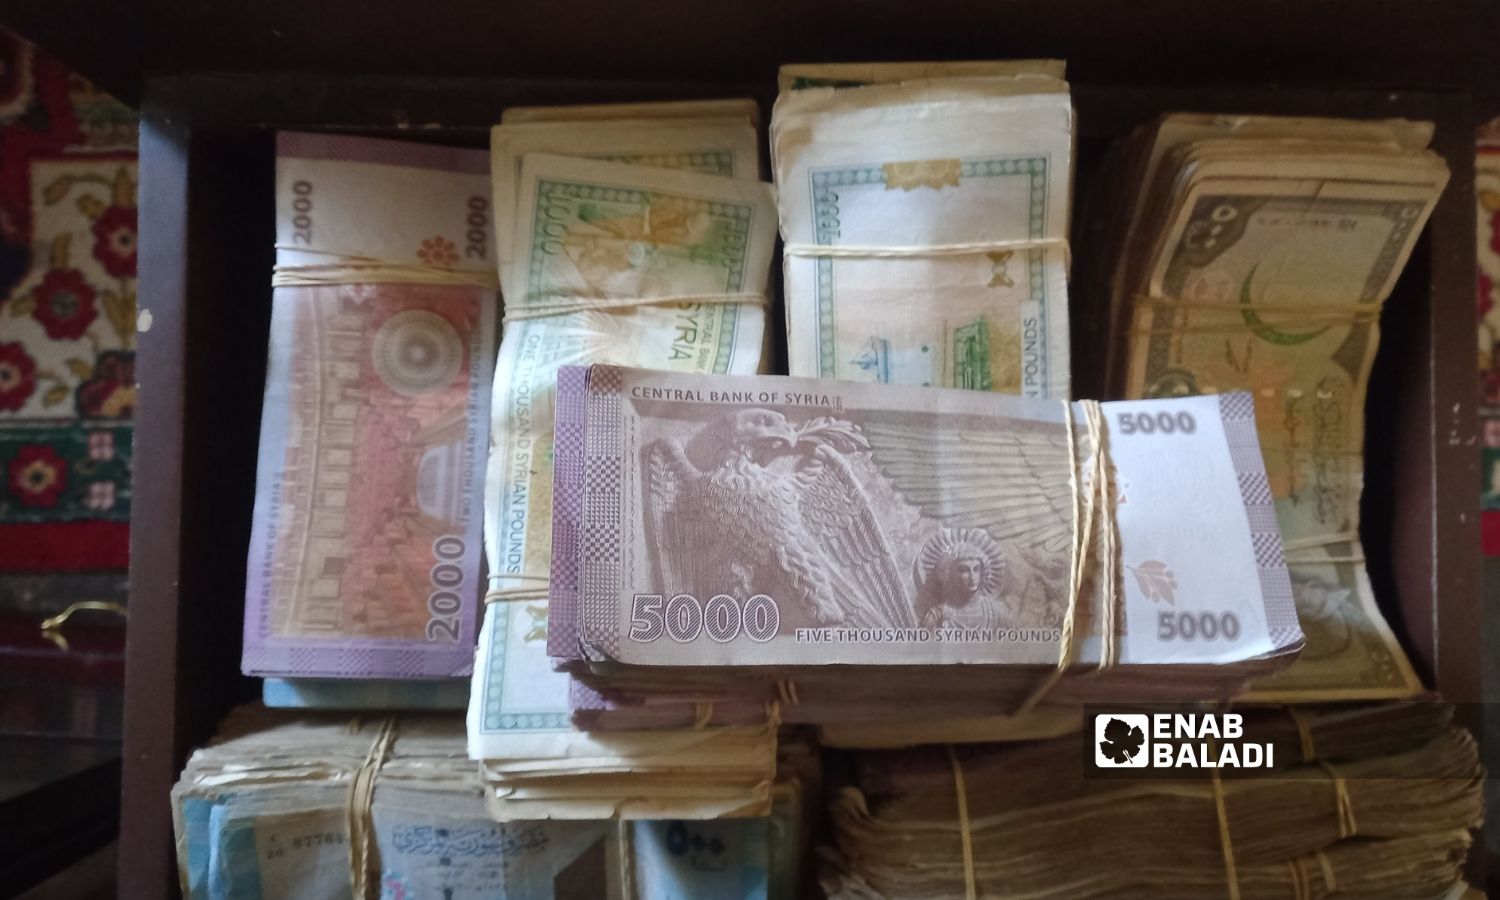 Syrian pound notes (Enab Baladi)